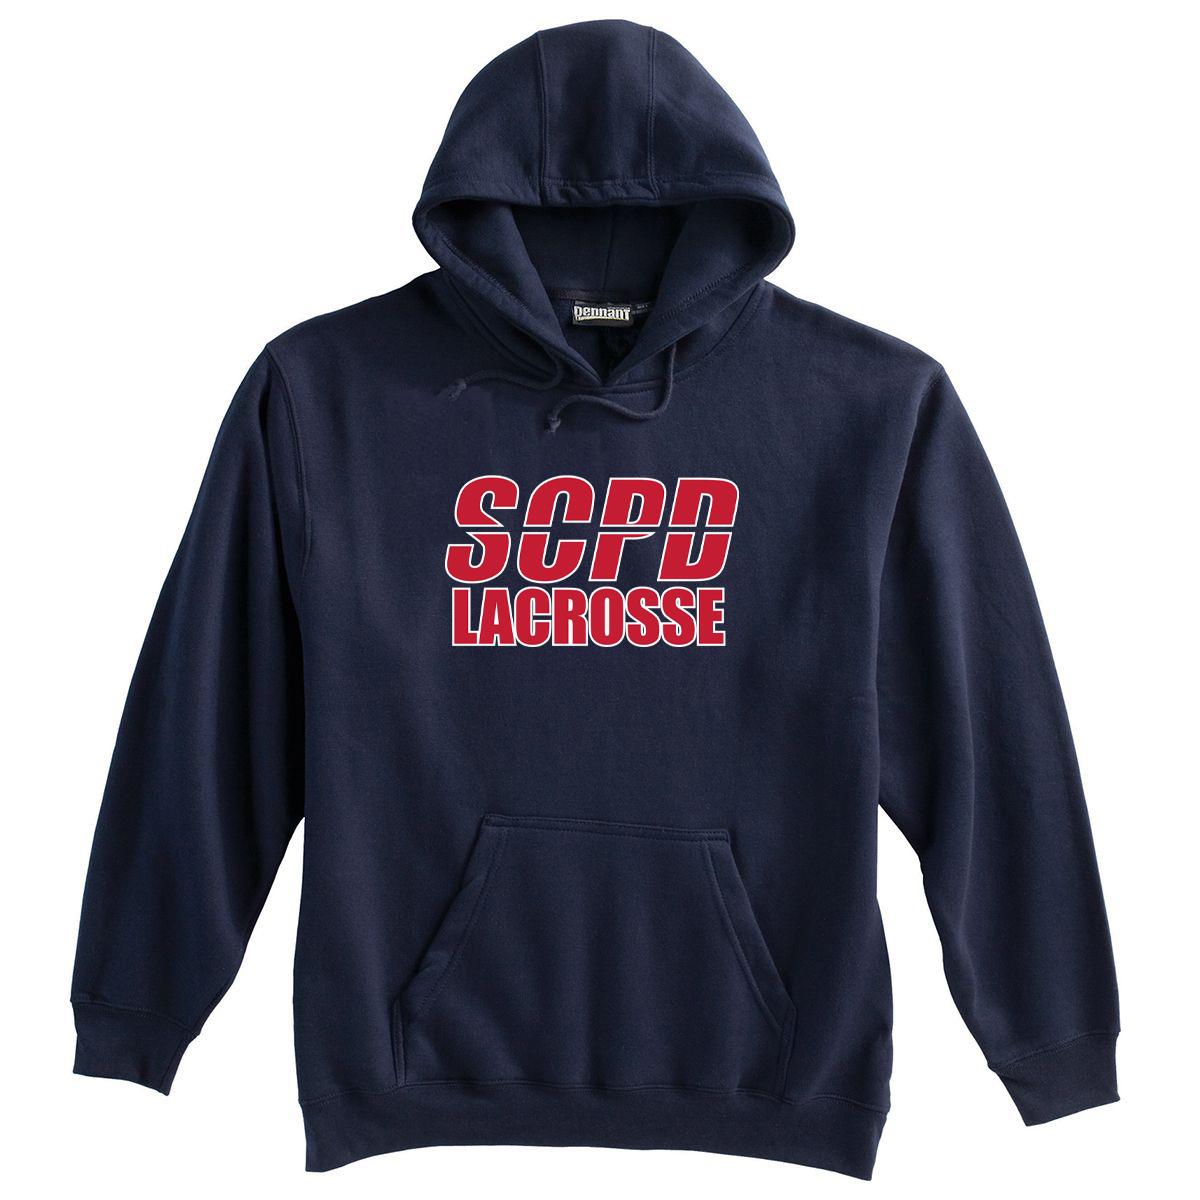 SCPD Lacrosse Sweatshirt